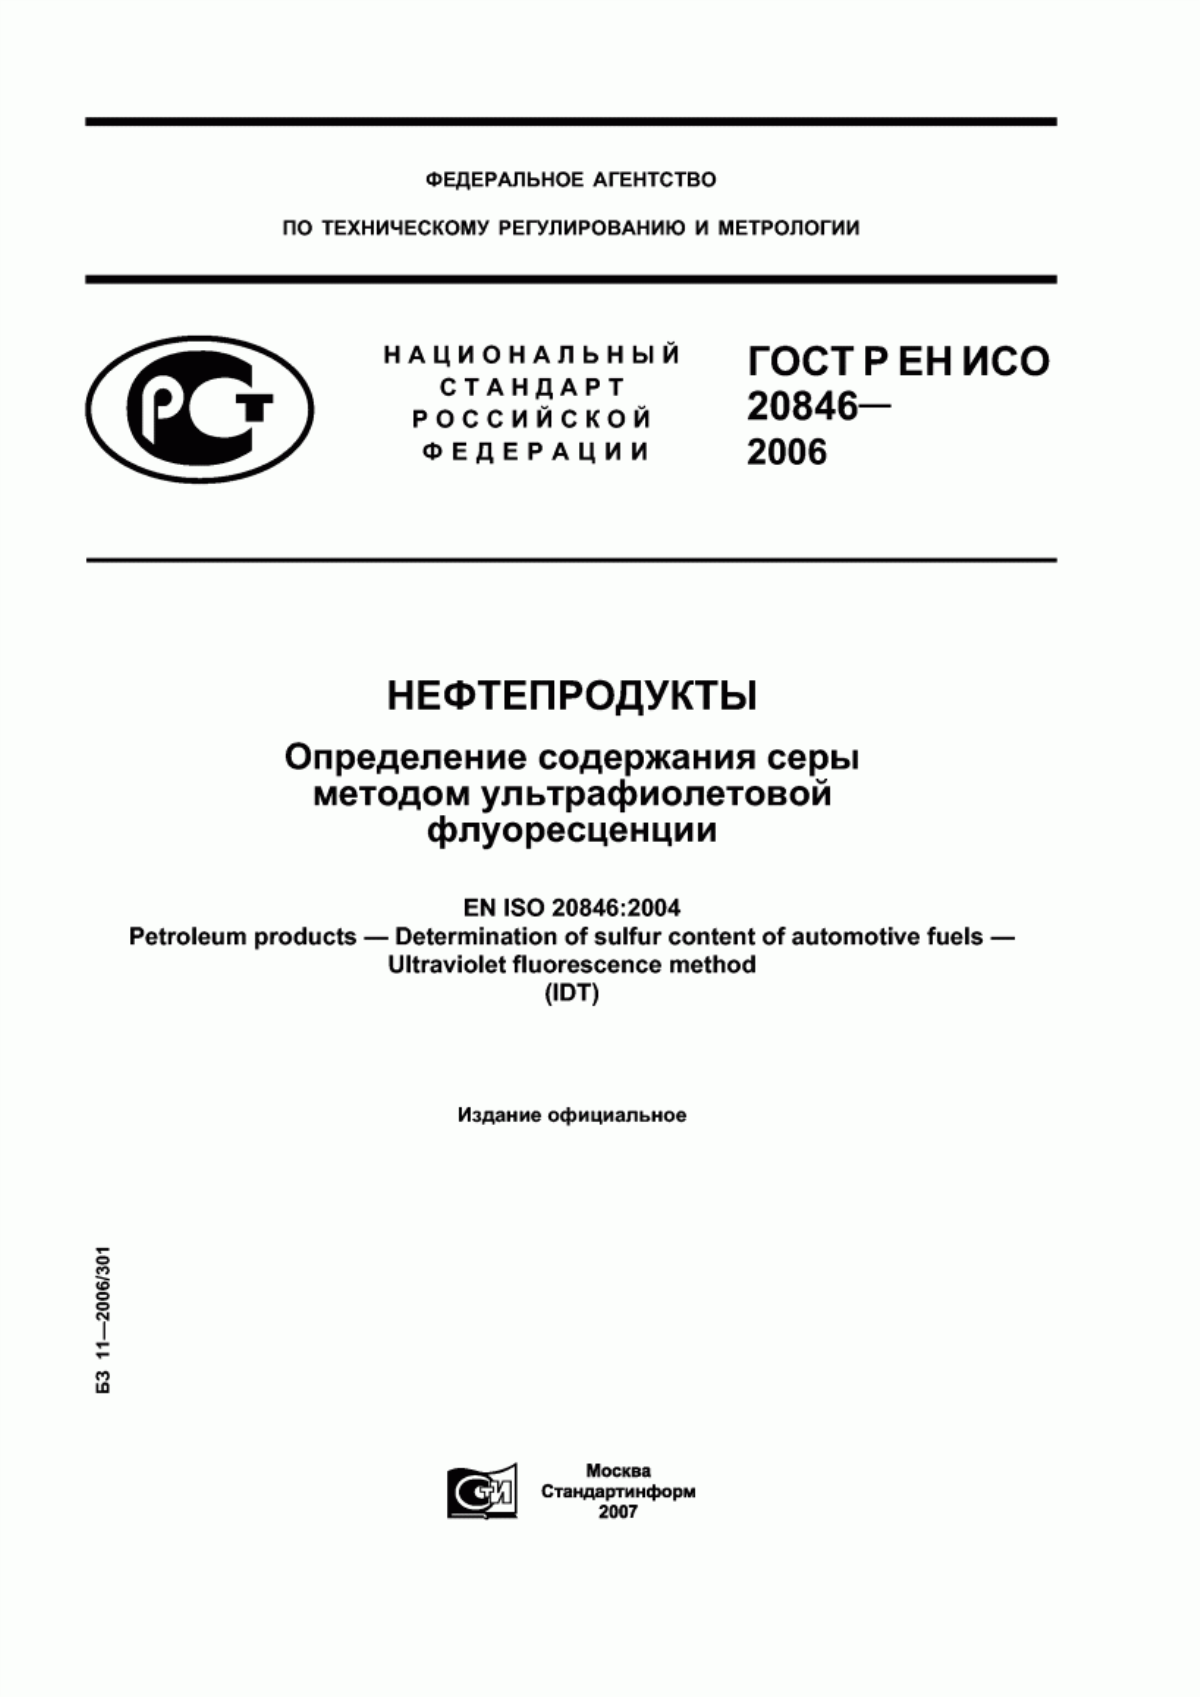 ГОСТ Р ЕН ИСО 20846-2006 Нефтепродукты. Определение содержания серы методом ультрафиолетовой флуоресценции